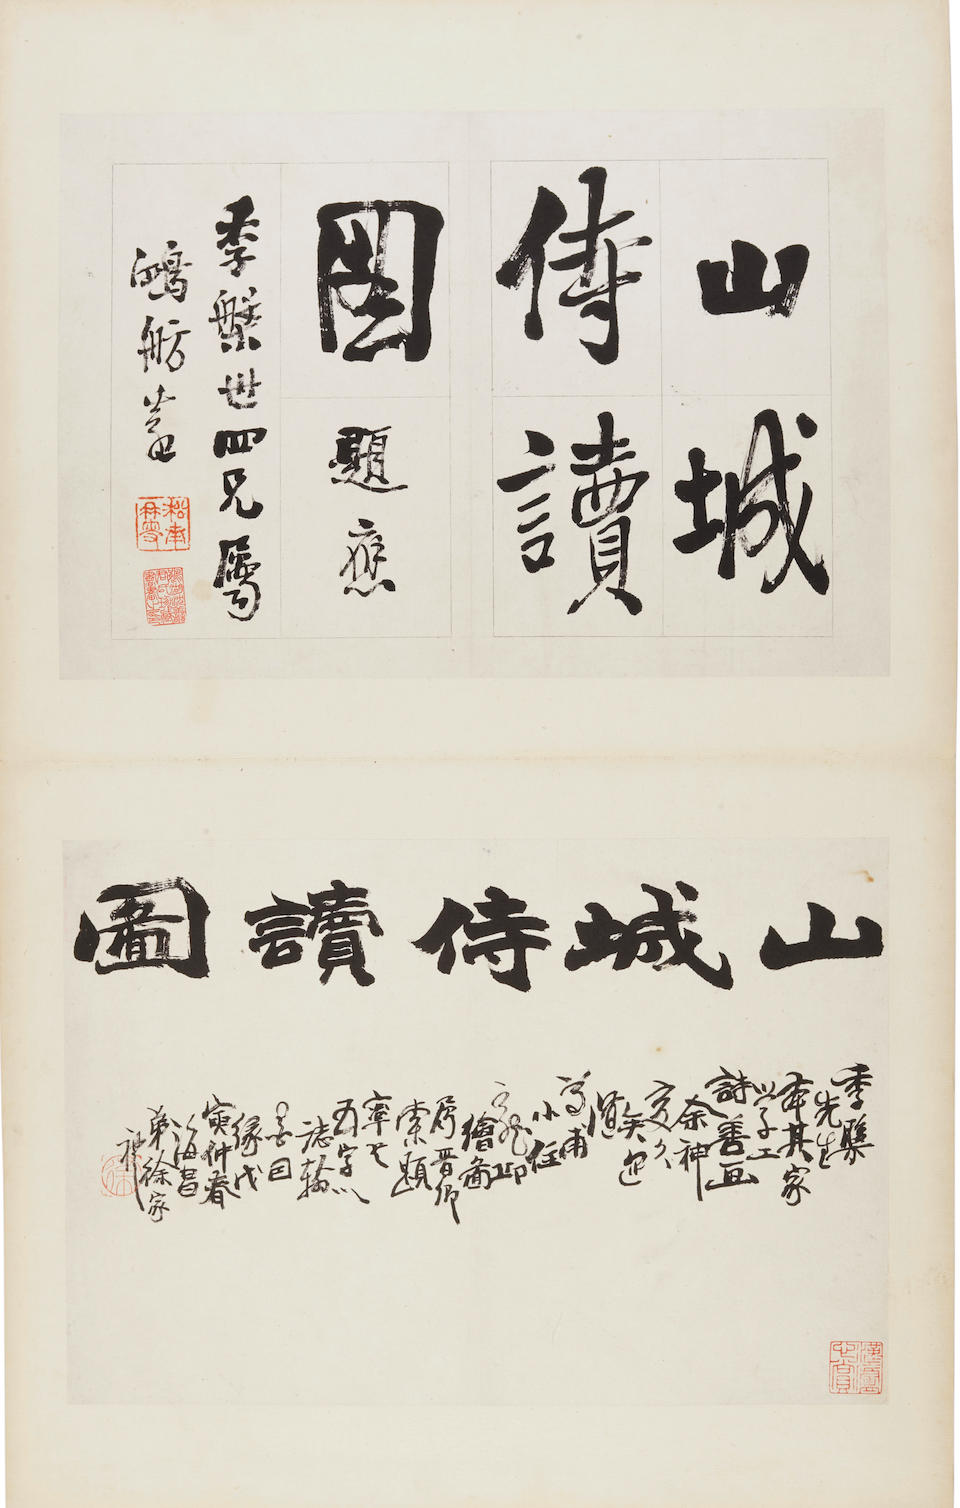 Zhang Xiong (1803-1886), Xu gu (1823-1896), Wu Dacheng (1835-1902), Yang Borun (1837-1911), Wu Guxiang (1848-1903) et al. Studying with Father at the Mountain City Wall, 1875-1876  (20)